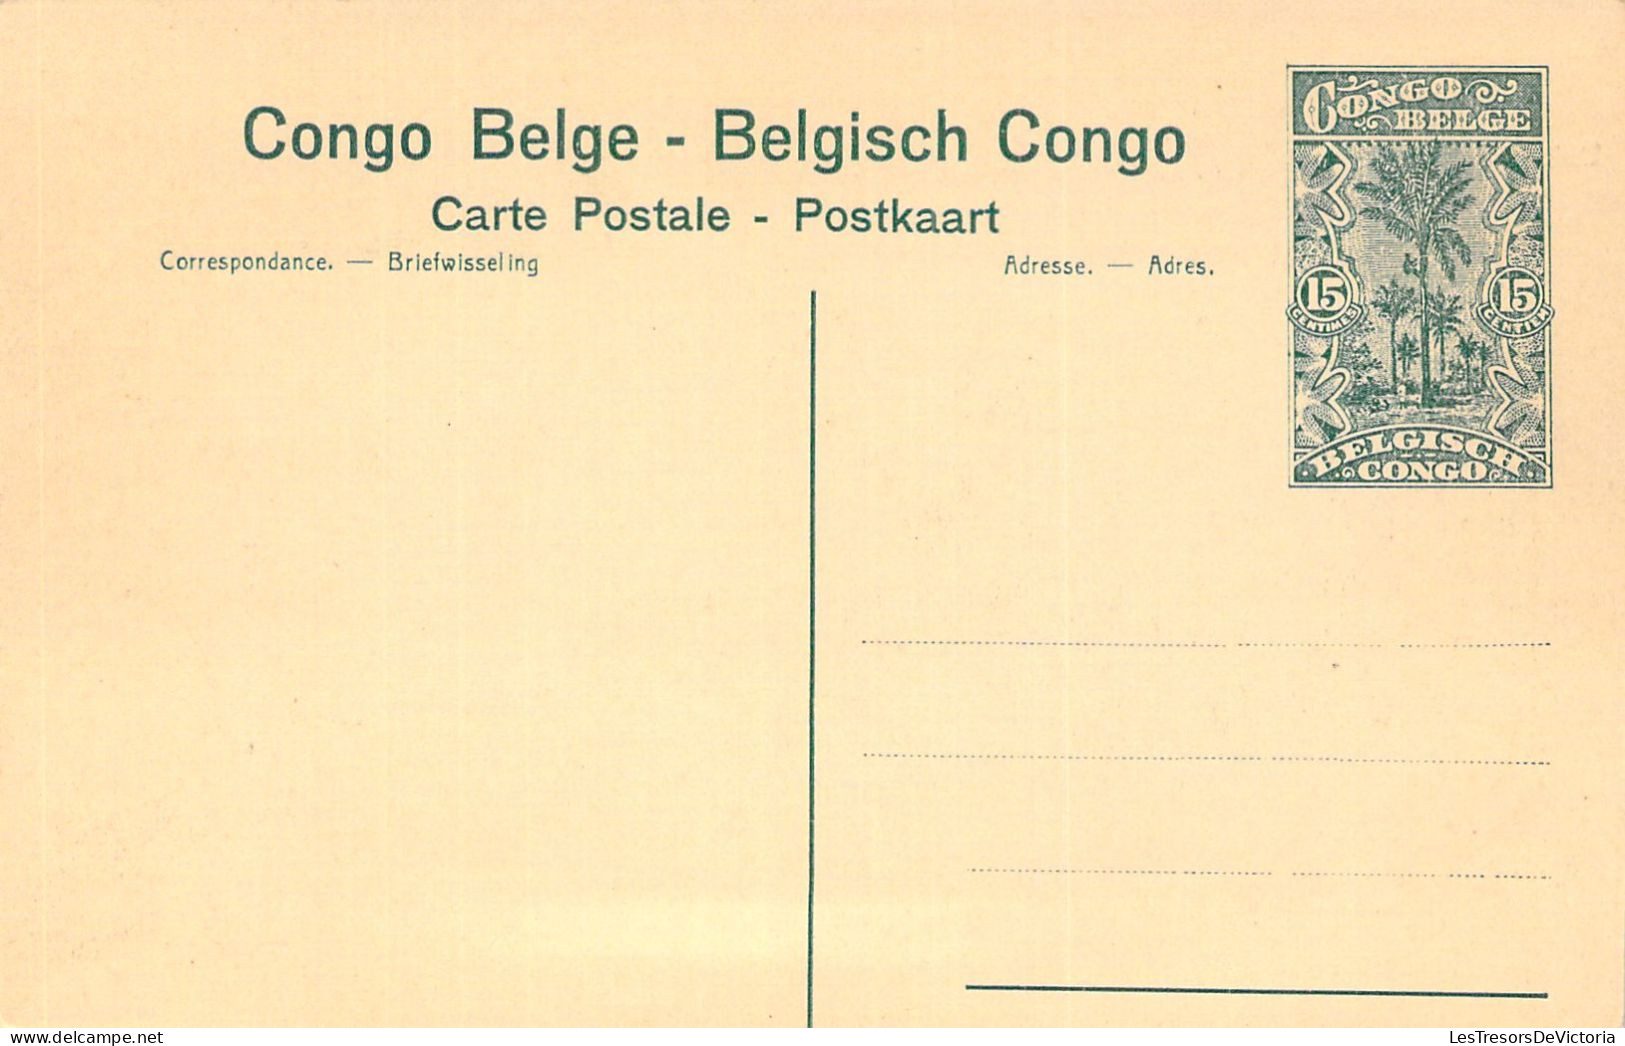 CONGO BELGE - PANDA - Intérieur De L'usine De Concentration - Carte Postale Ancienne - Congo Belga